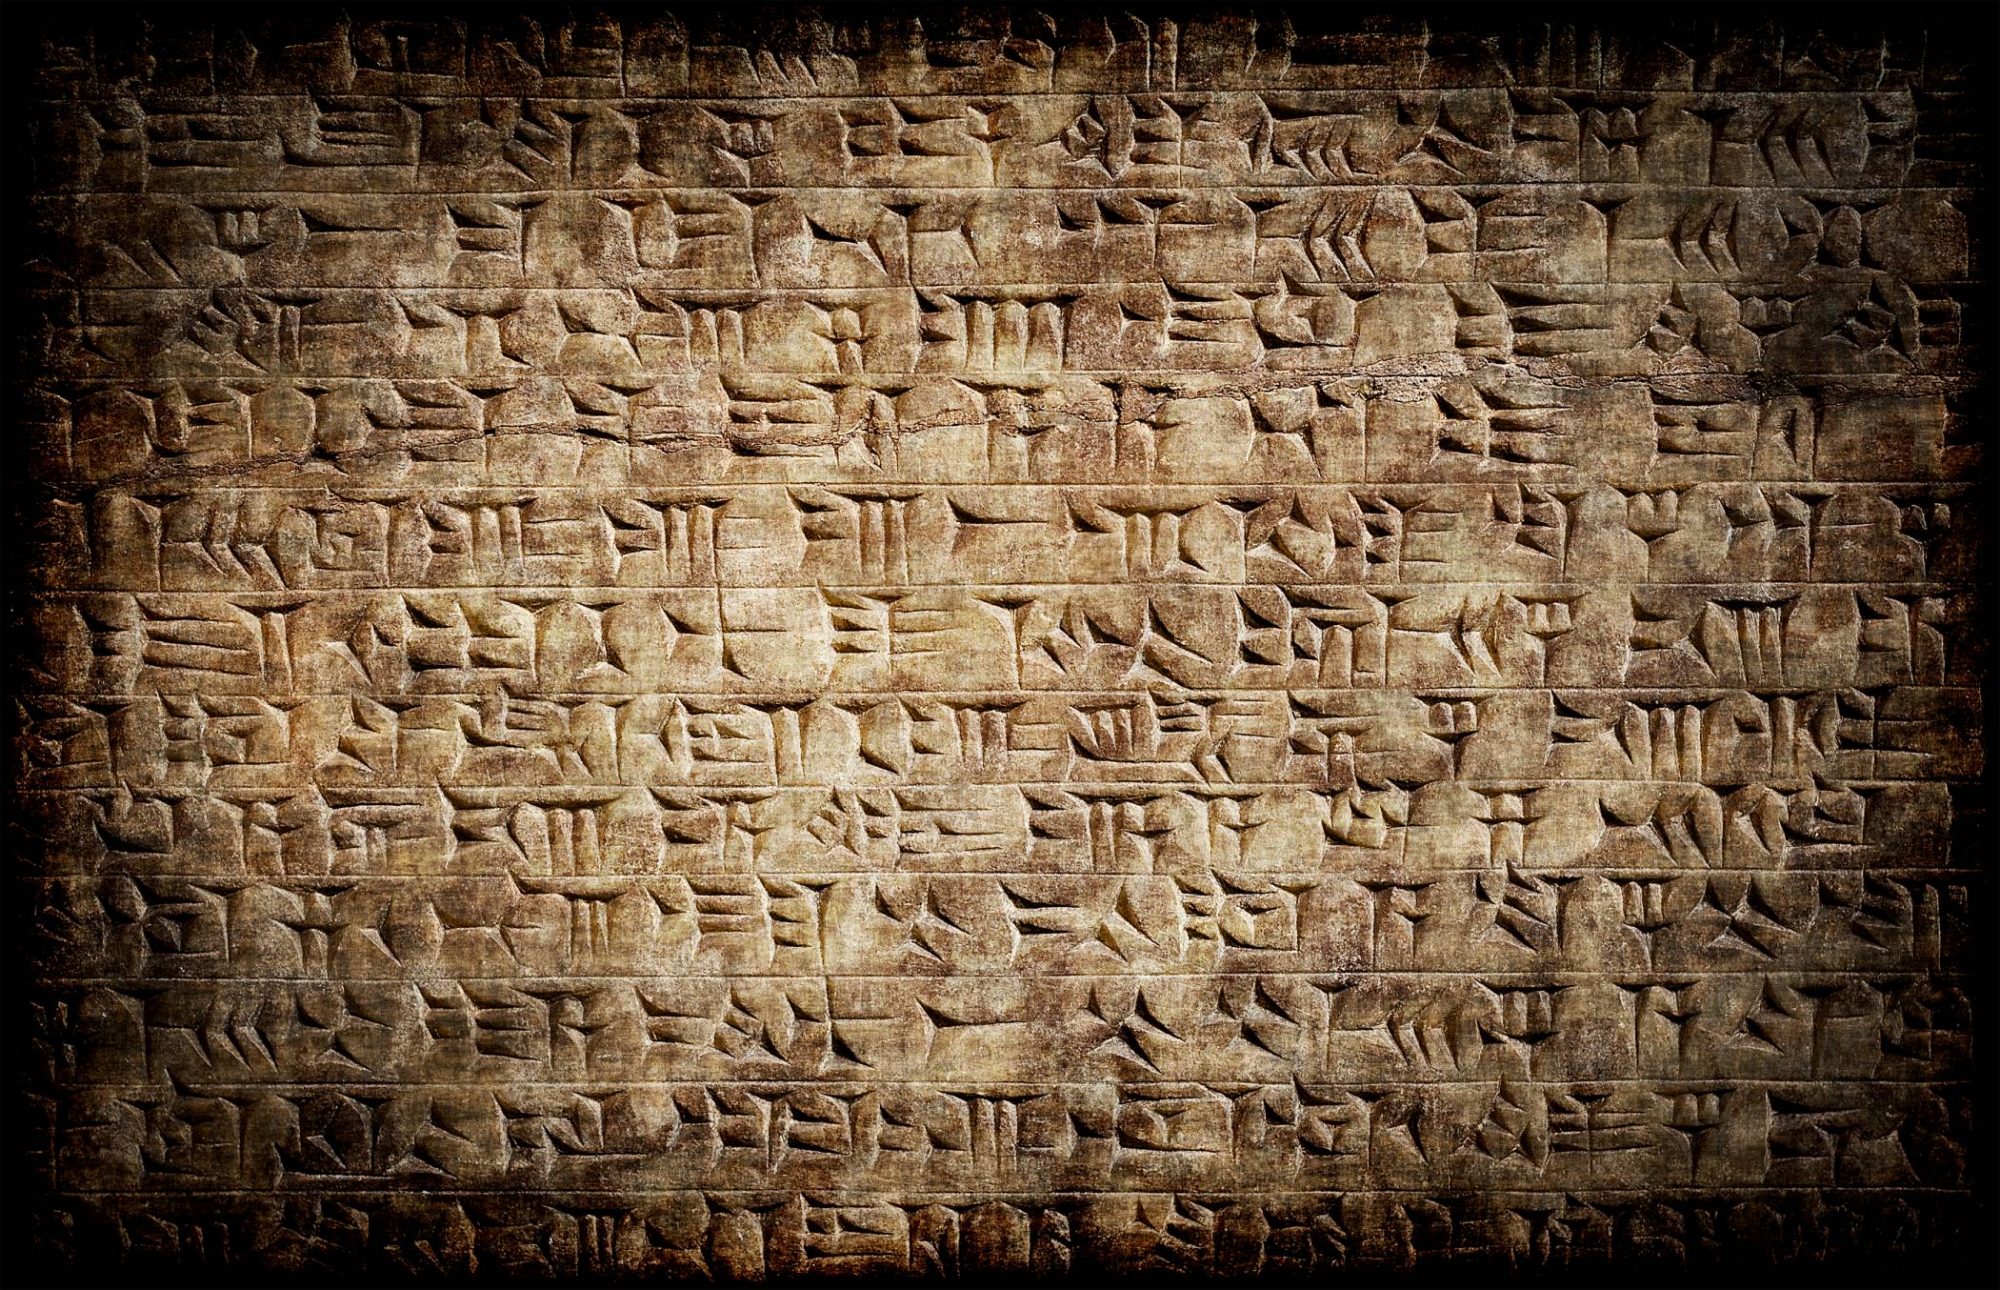 НЕТРИВИАЛЬНОЕ РЕШЕНИЕ: как расшифровать древнюю надпись, не зная даже букв, которыми она написана